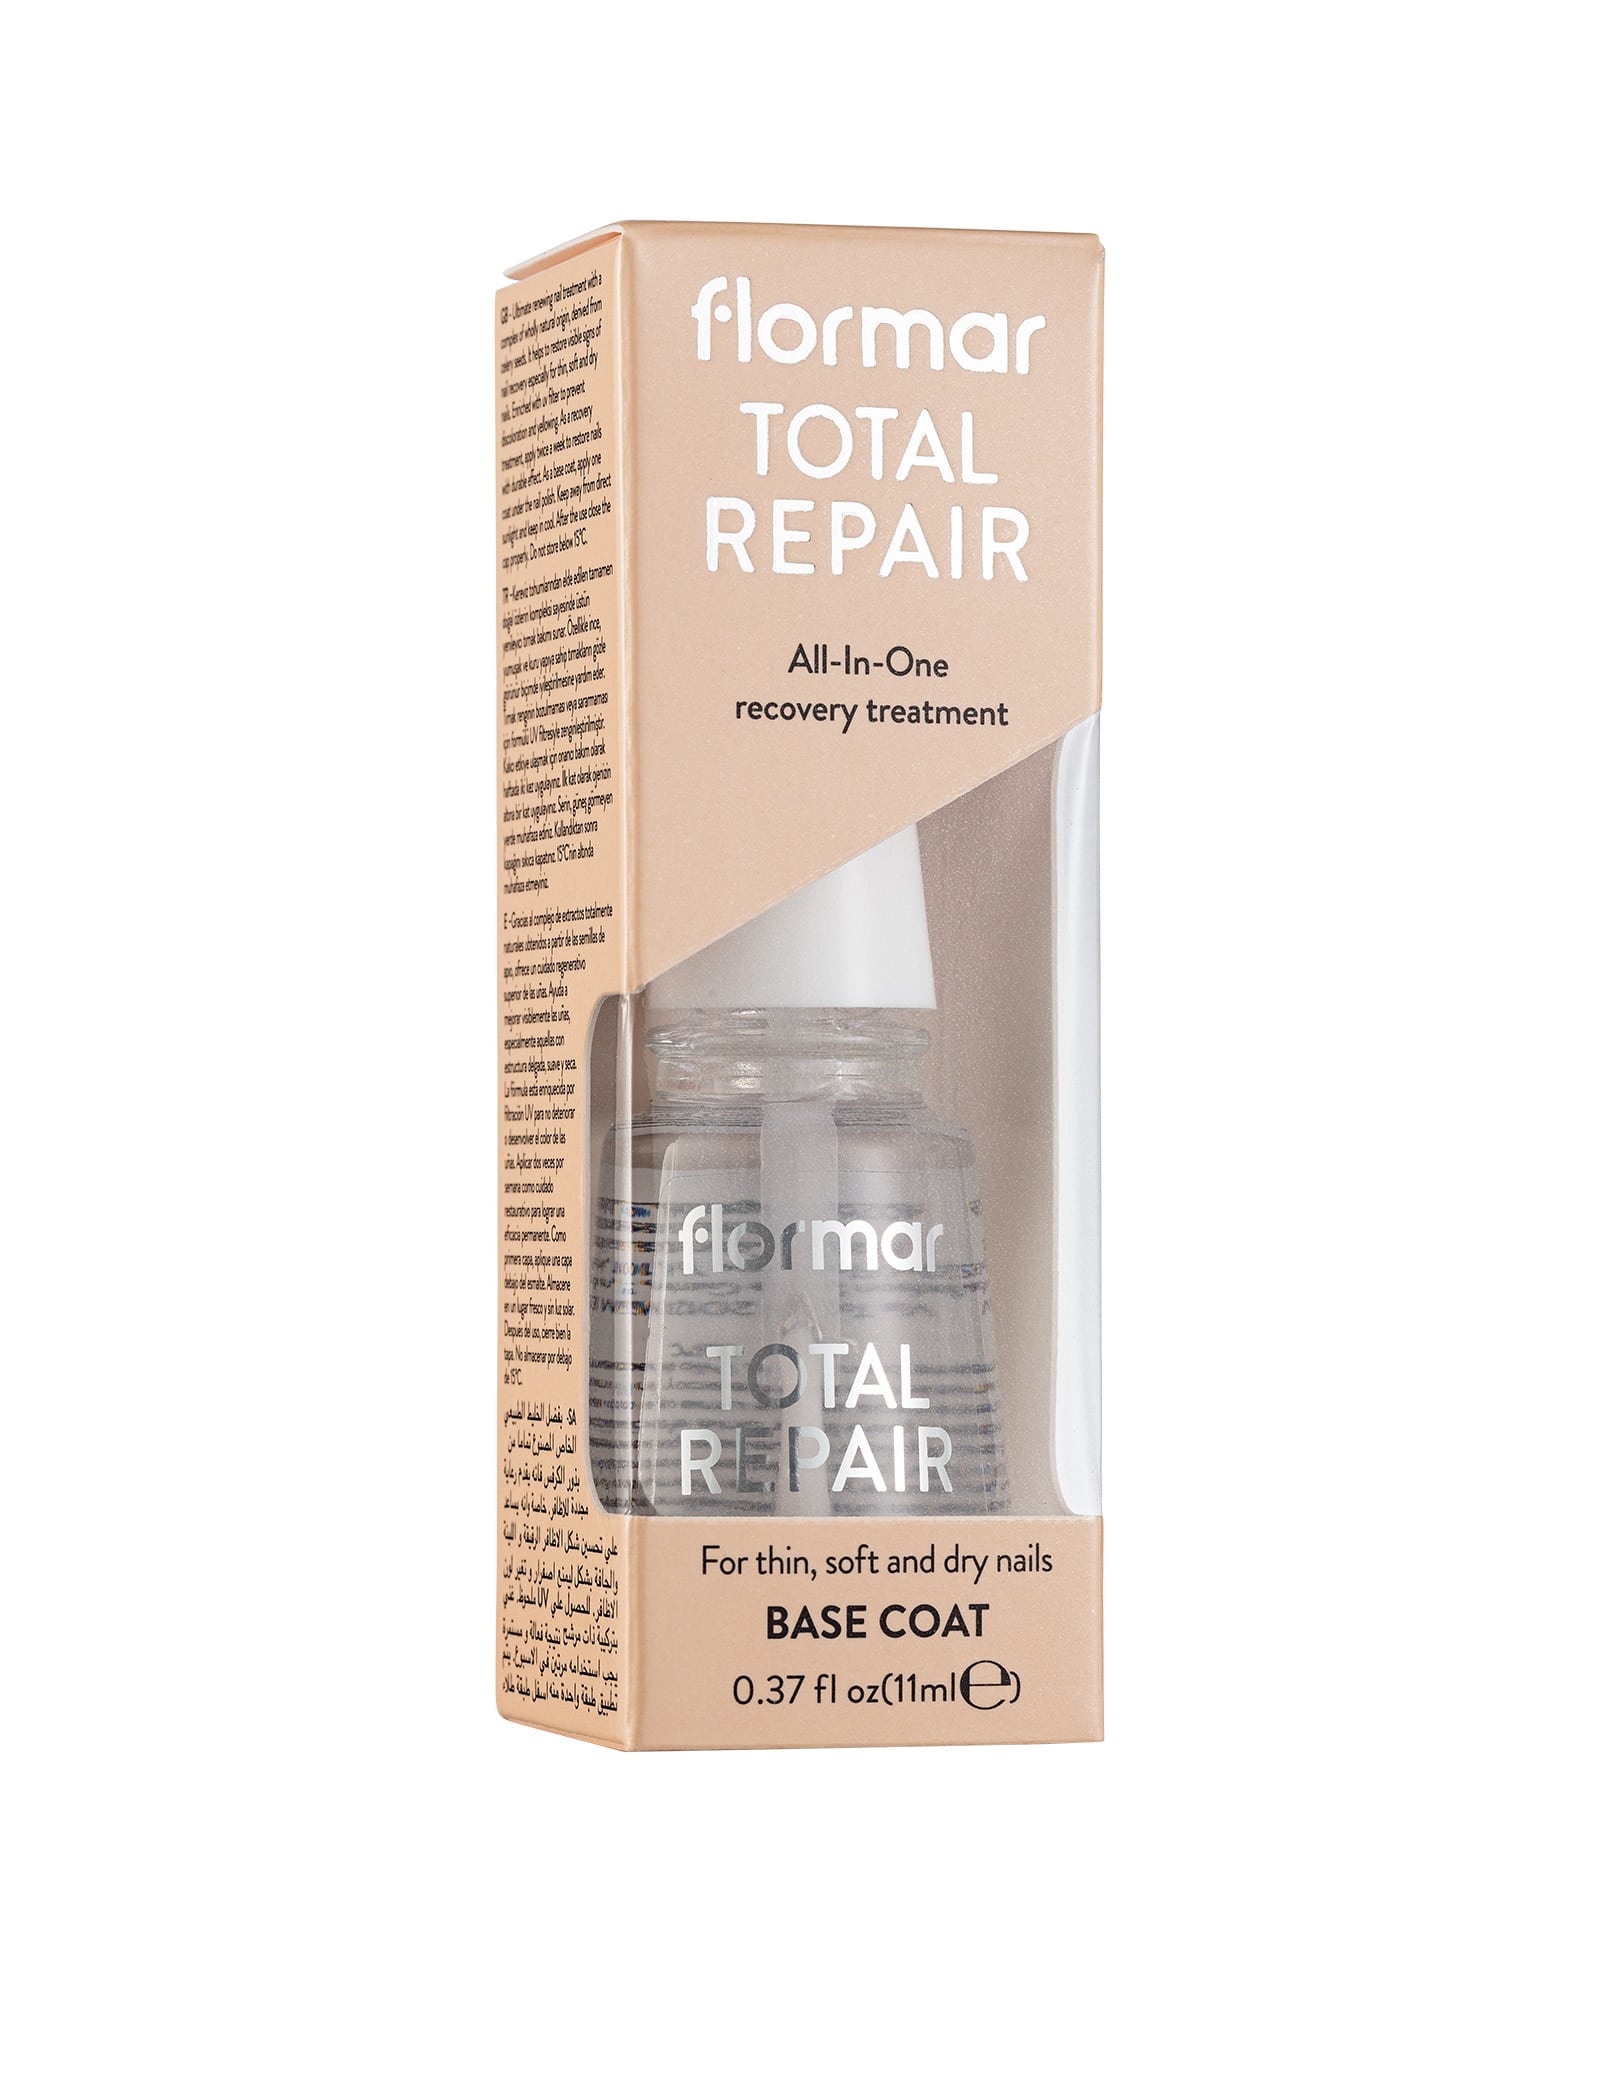 Flormar Nail Care Total Repair